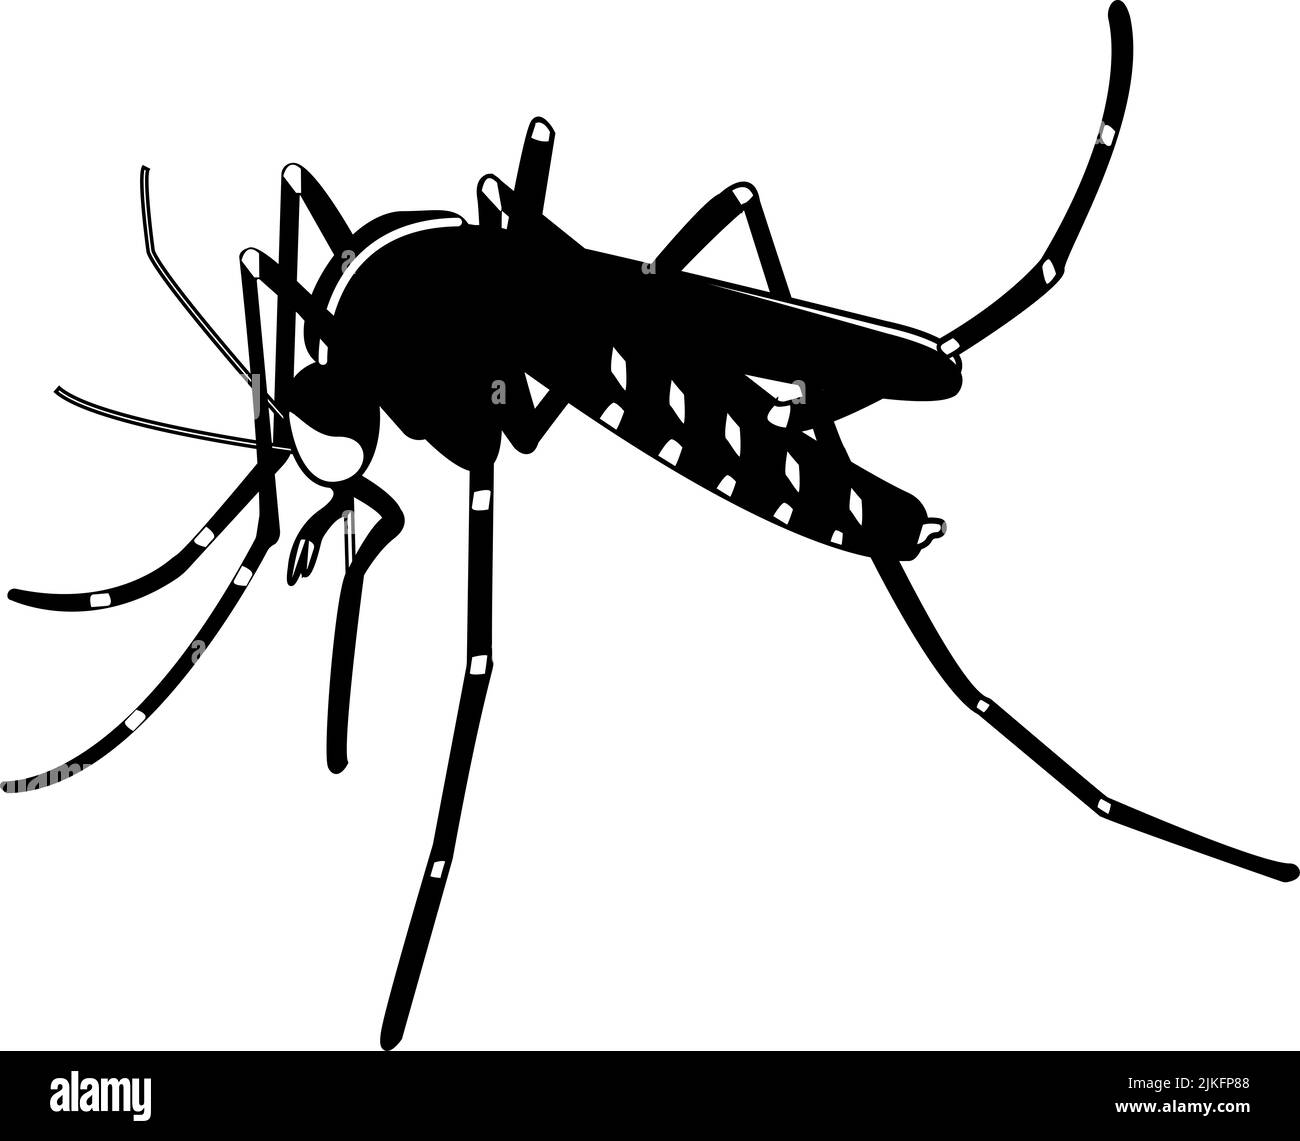 Illustrazione di una zanzara. Asian Tiger mosquito disegnare, immagine in bianco e nero. Foto Stock